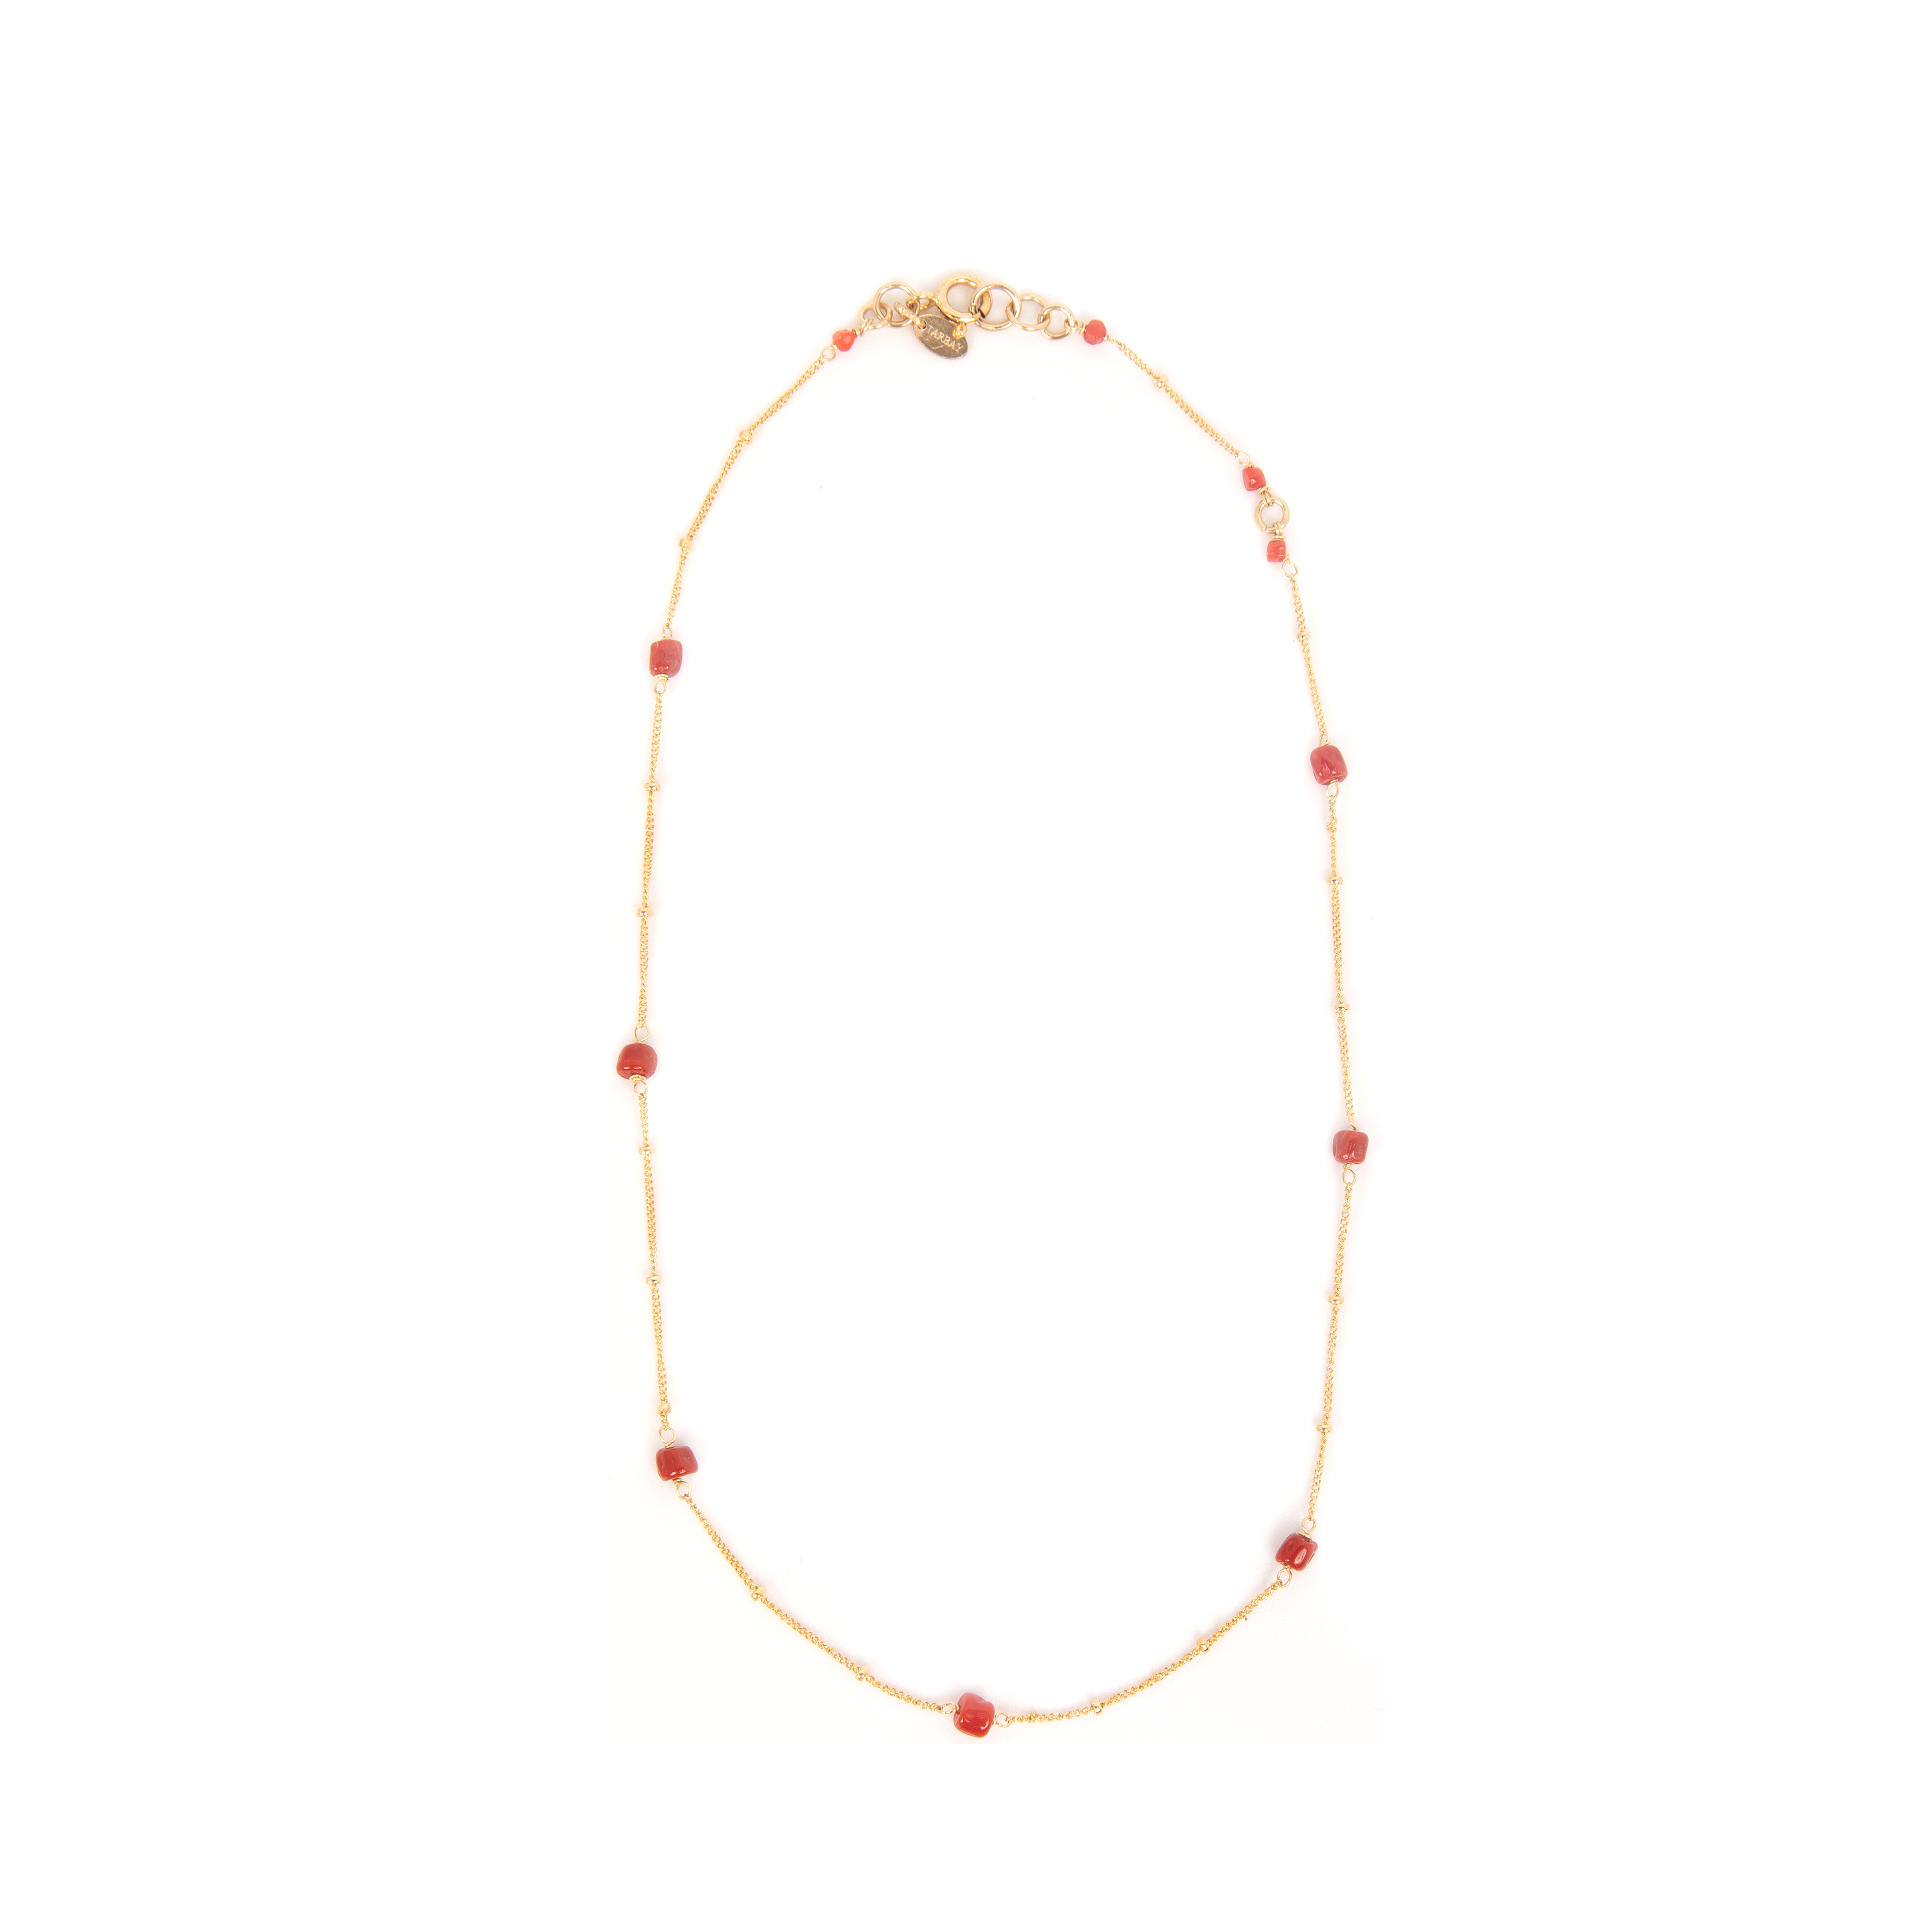 Pensamientos Necklace #1 - Red Coral Necklaces TARBAY   